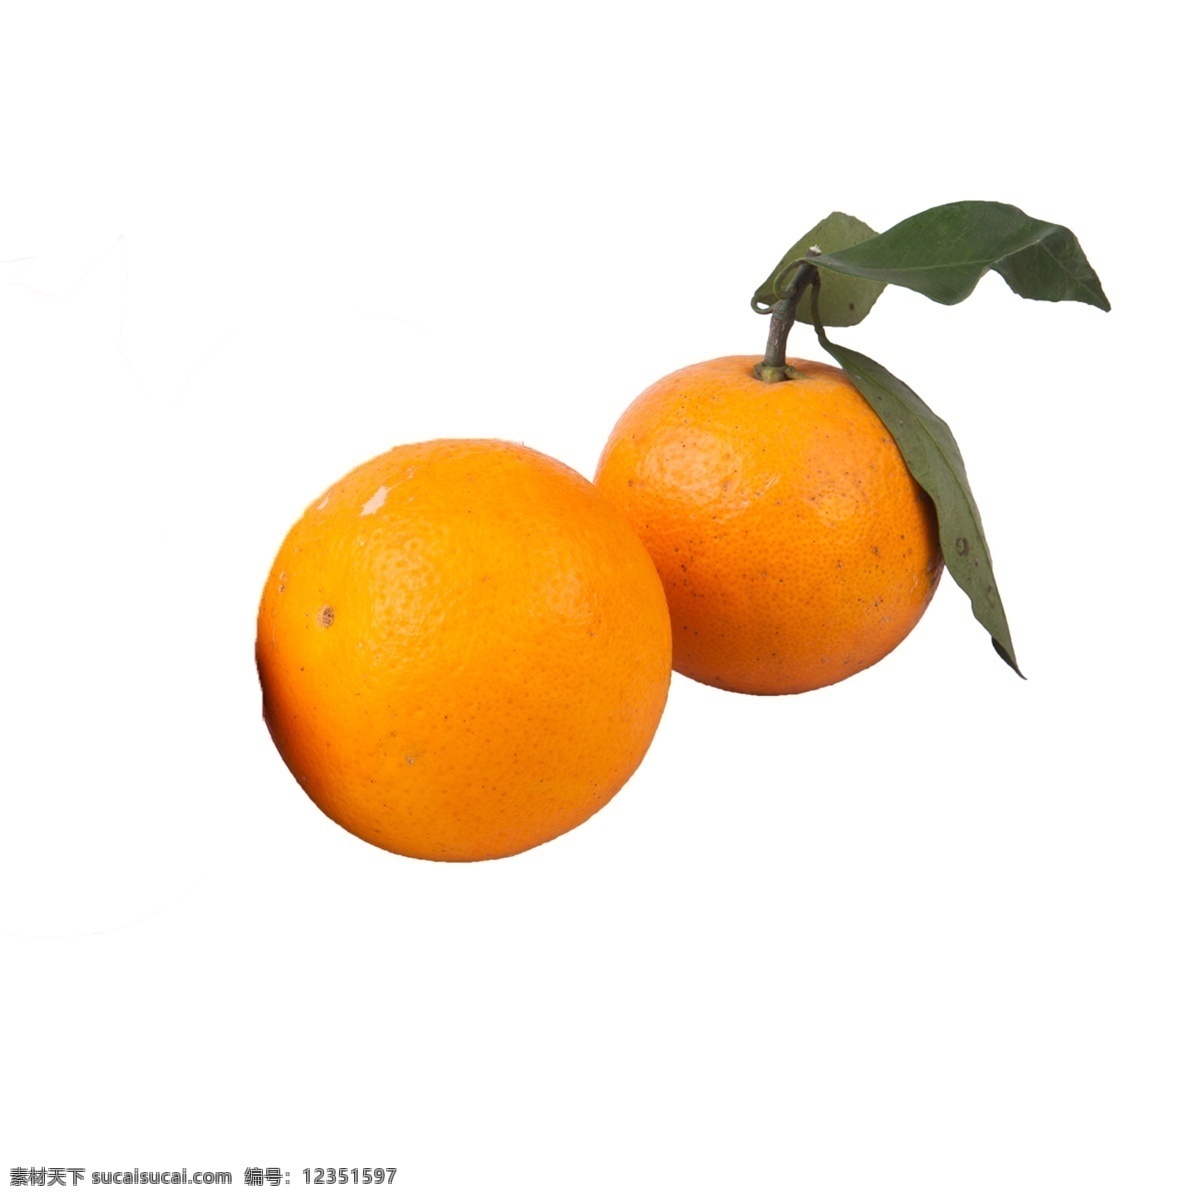 两个 橙子 免 抠 水果 好吃的橙子 两个橙子 两个橙子免抠 新鲜的橙子 有营养的橙子 甜橙